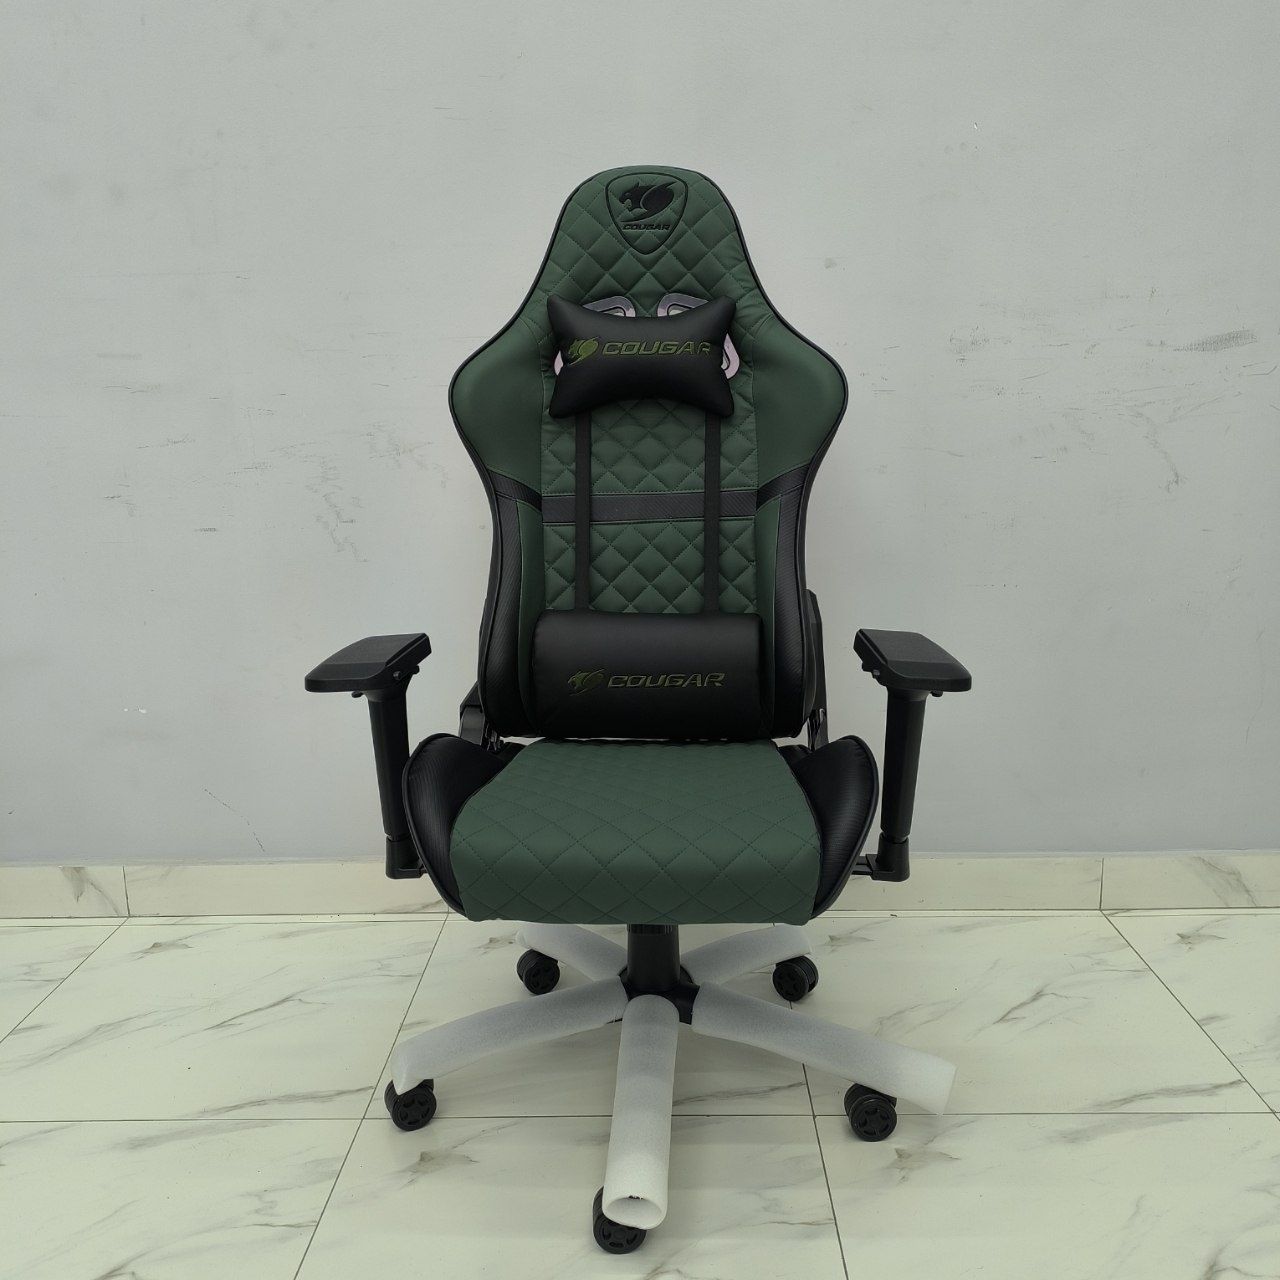 Игровое кресло Геймерское кресло модель Cougar green